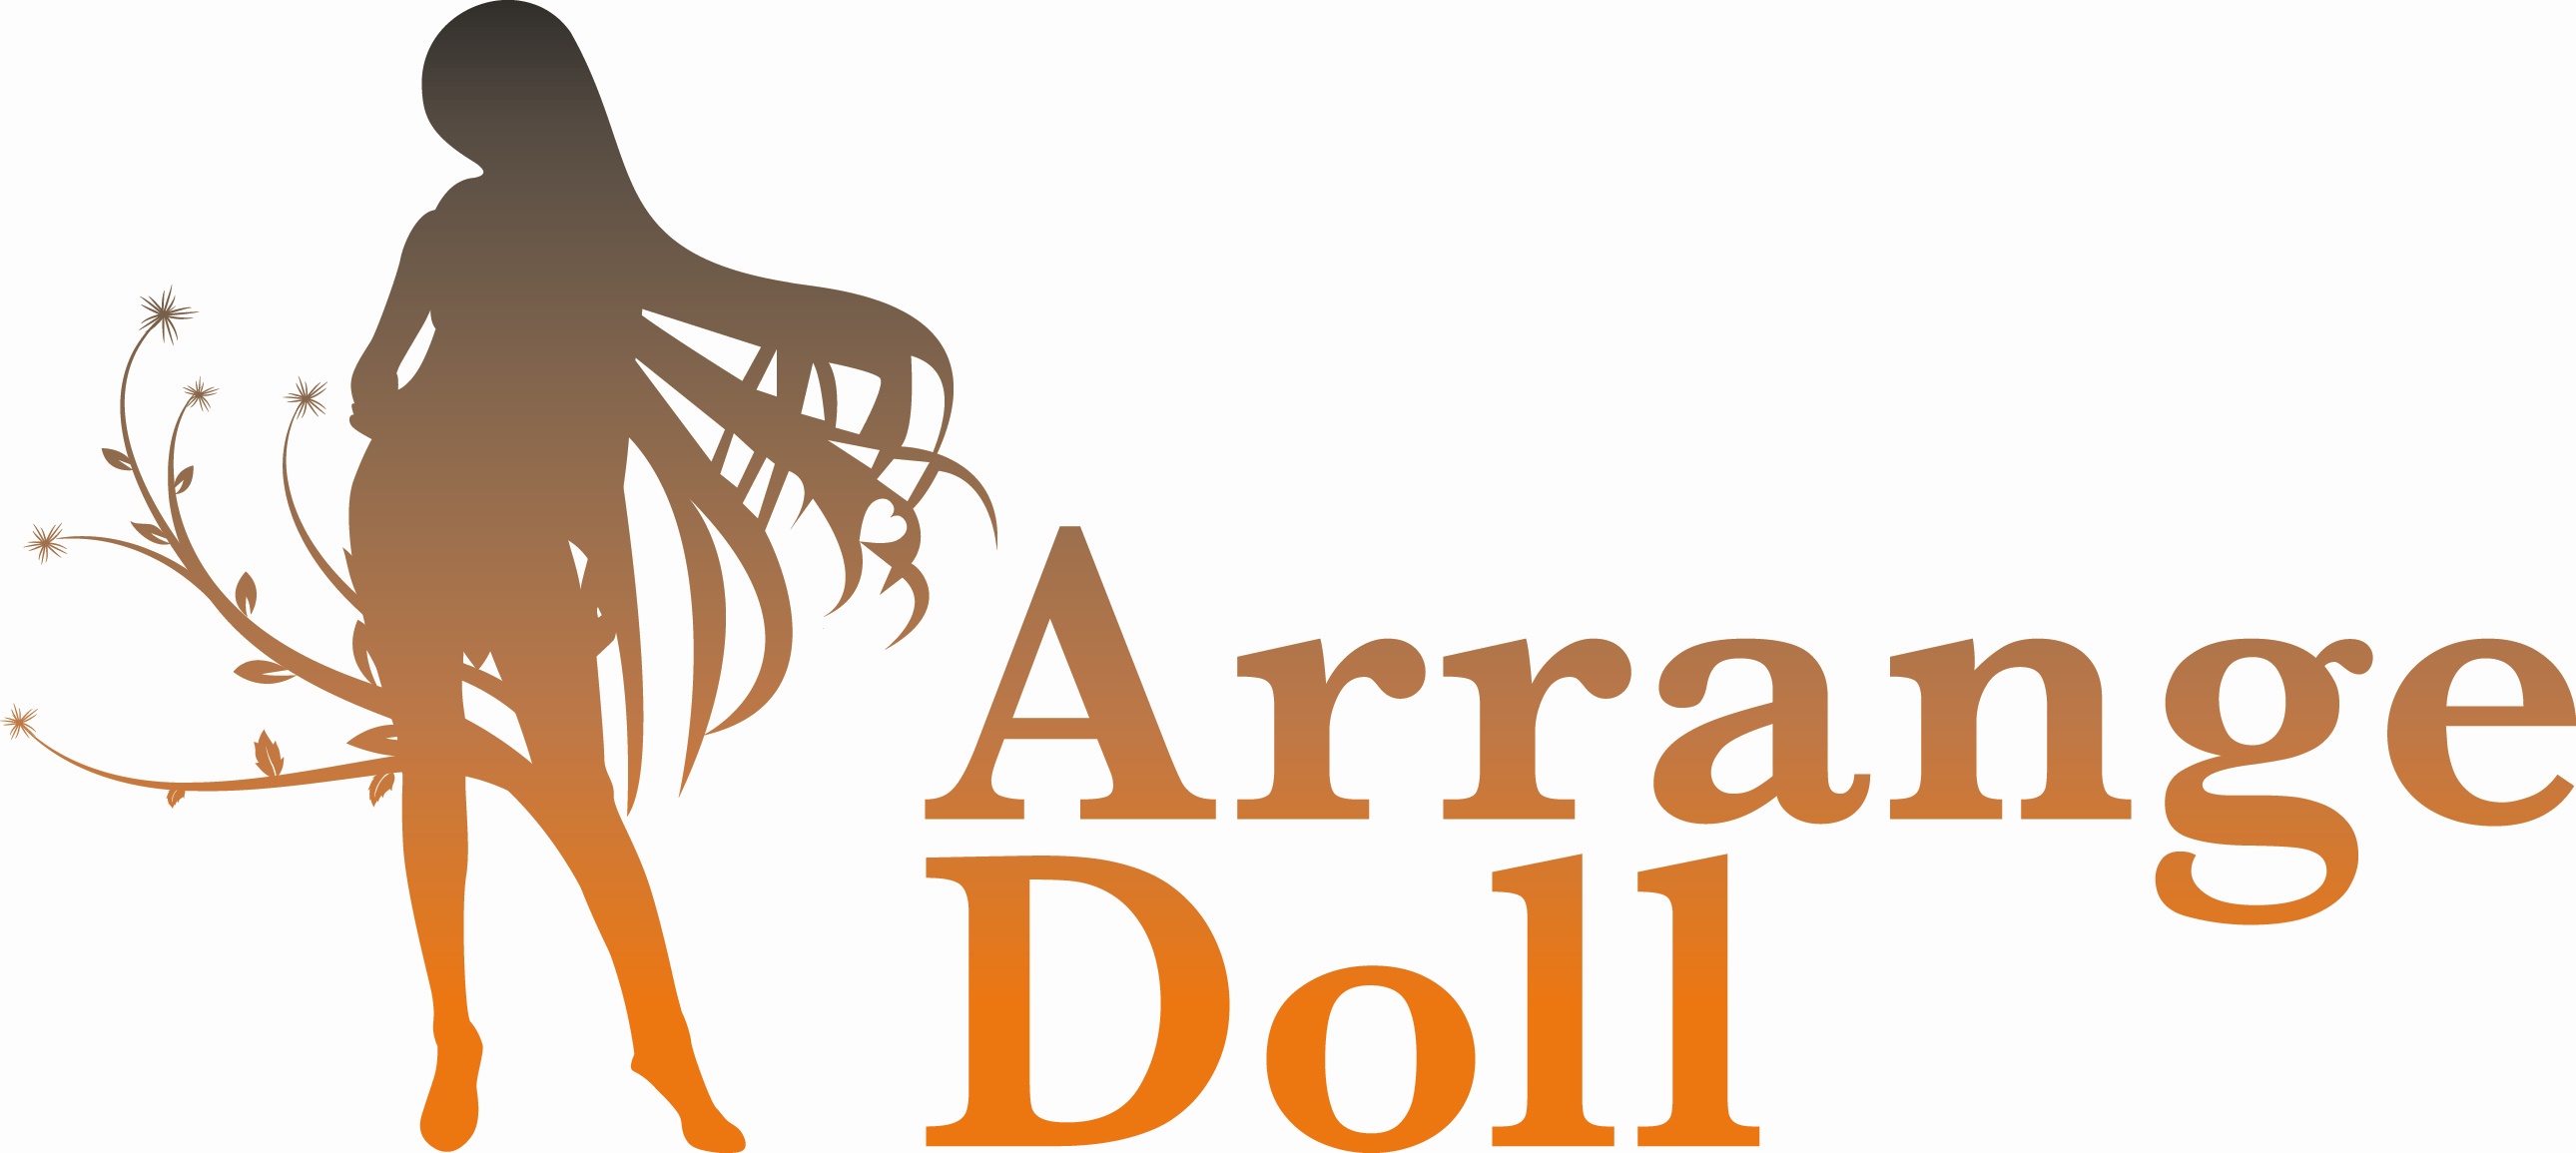 arrange-doll-logo2.jpg